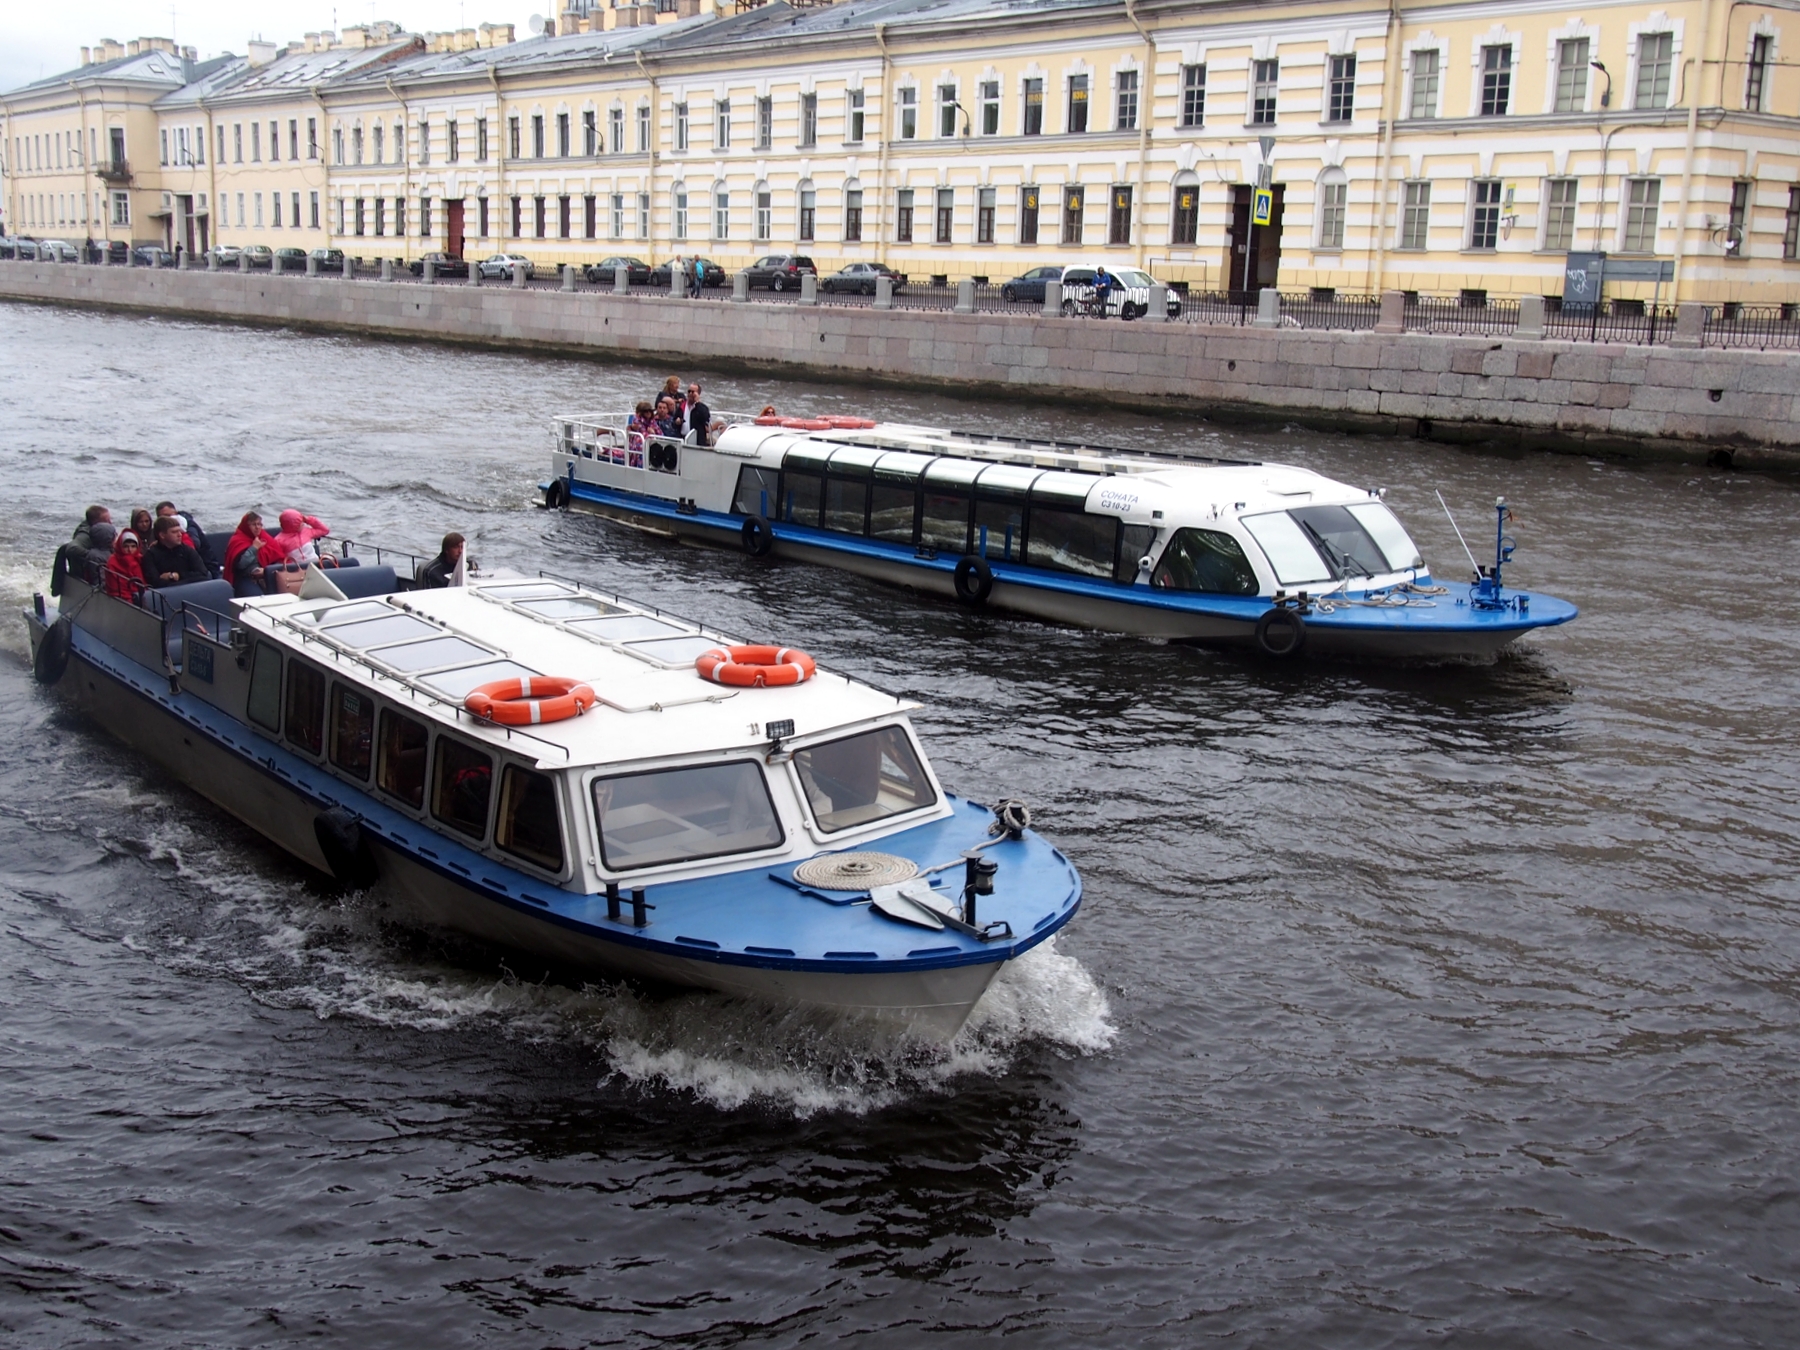 Около 16 тысяч интуристов посетили Петербург по электронным визам с 1 октября